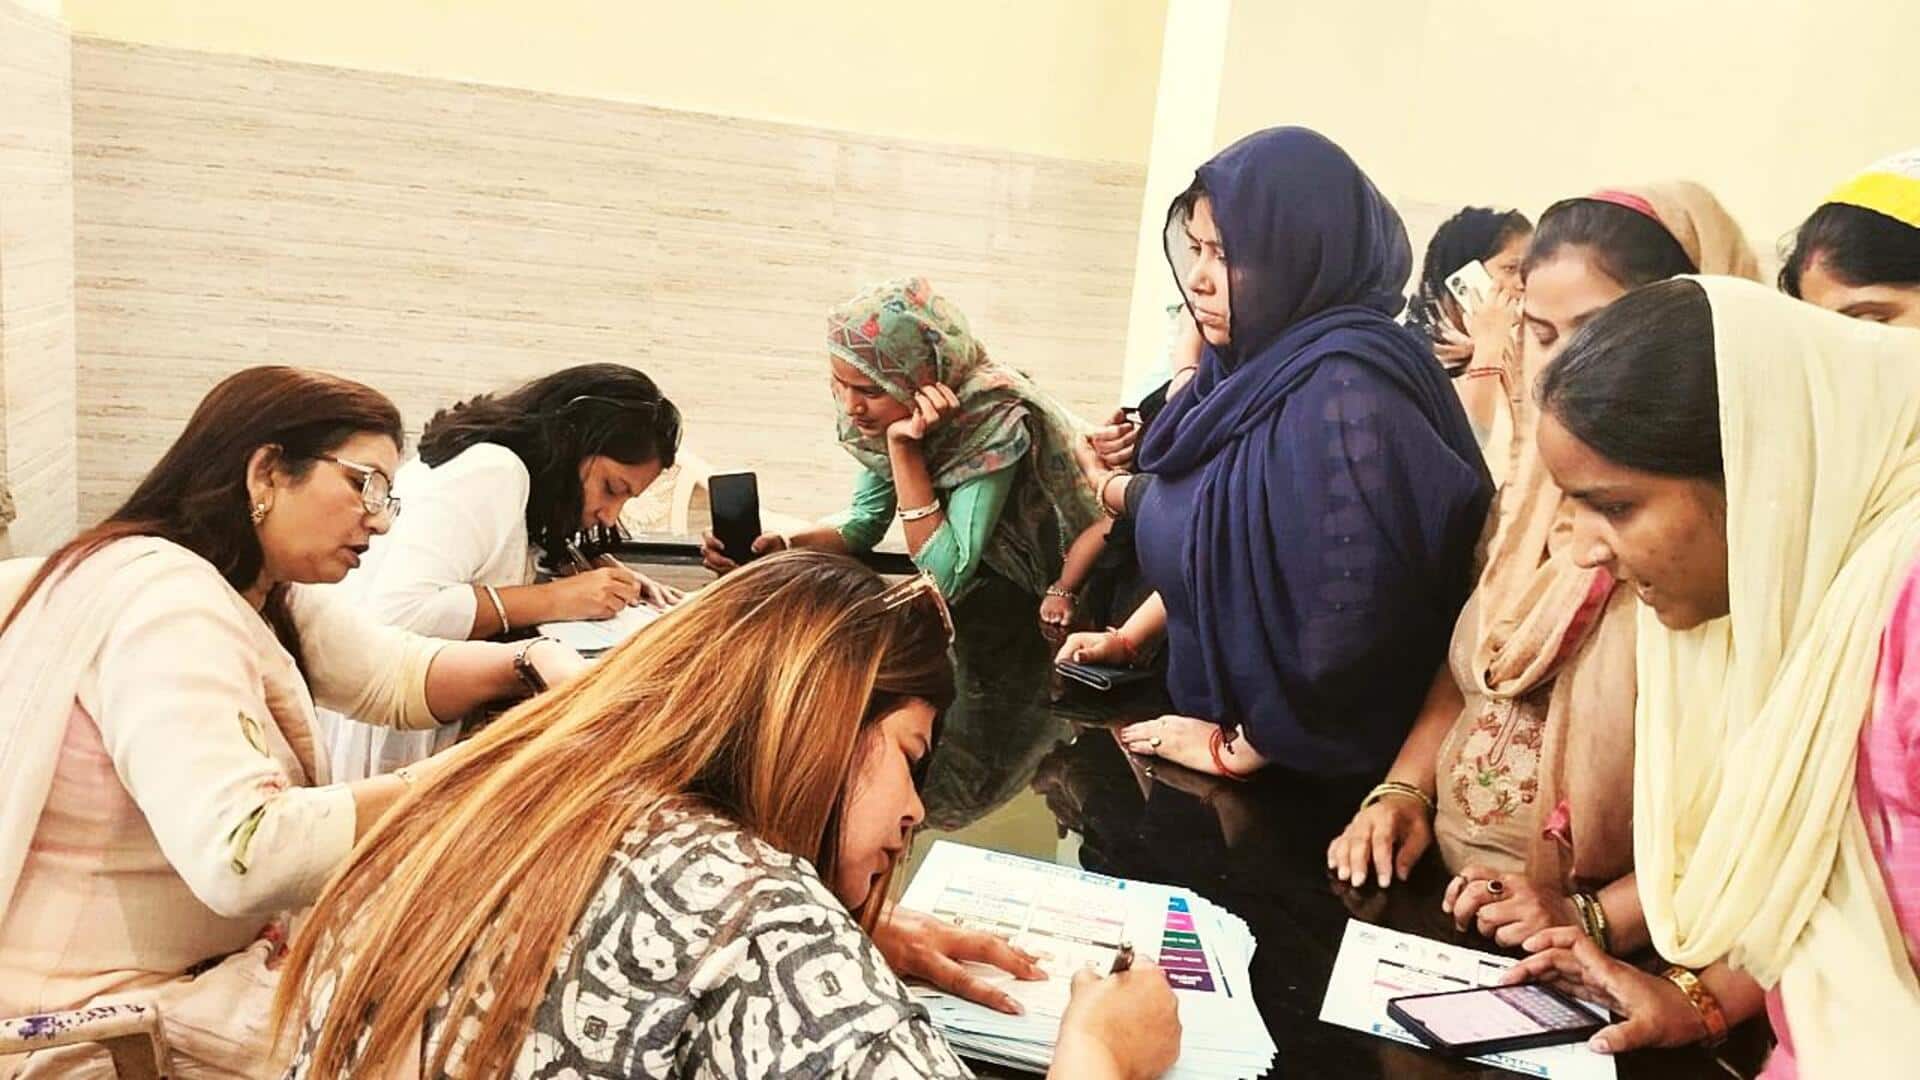 उत्तर प्रदेश: गारंटी कार्ड लेकर महिलाएं कांग्रेस के दफ्तर पहुंचीं, 1 लाख रुपये मांगे